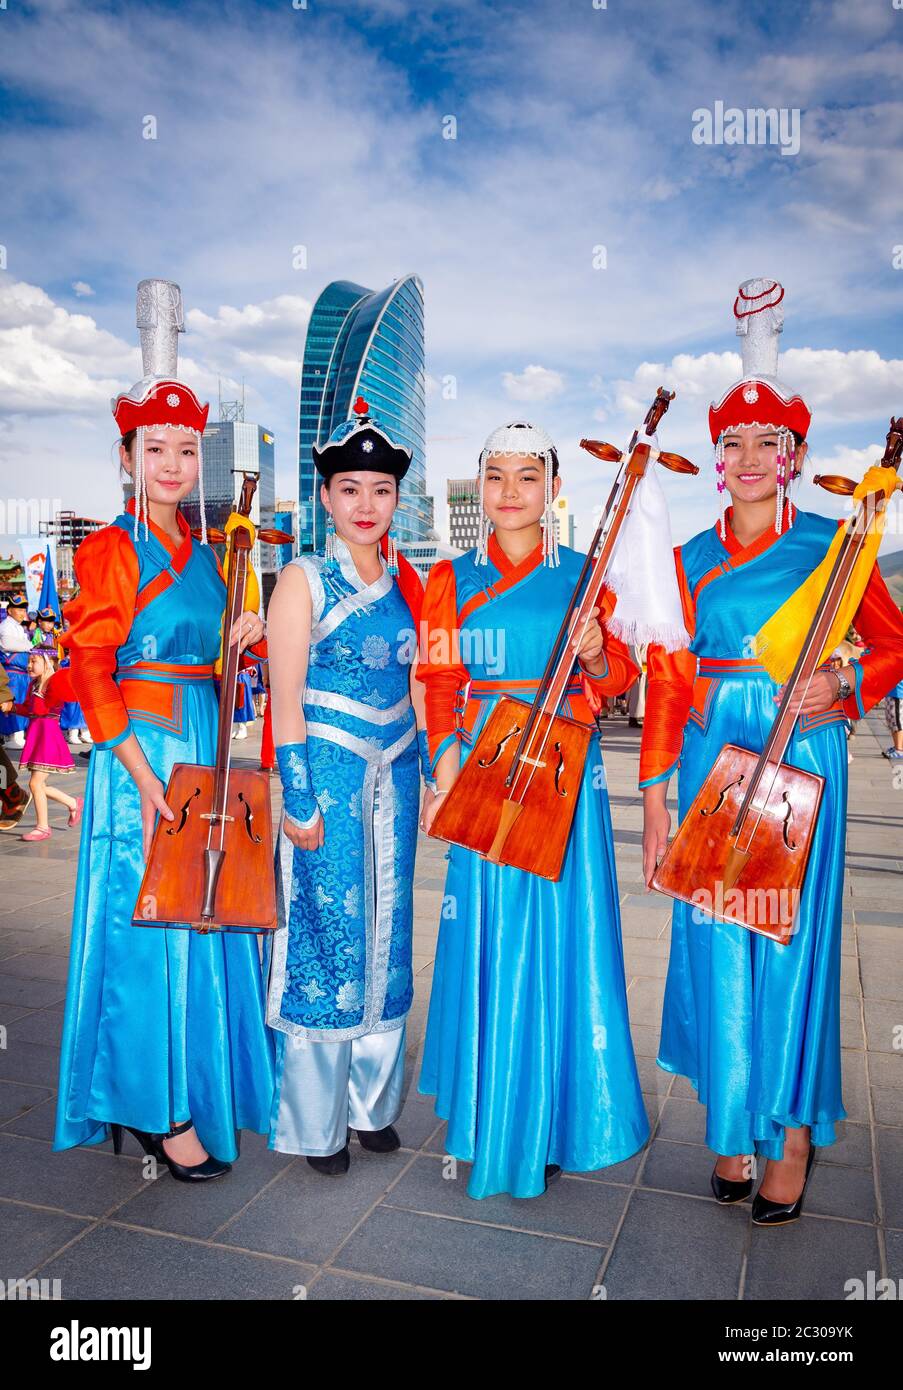 Les filles mongoles portant un costume traditionnel et posant avec l'instrument de musique national Morin huur, la place Sukhbaatar, capitale d'Oulan-Bator Banque D'Images